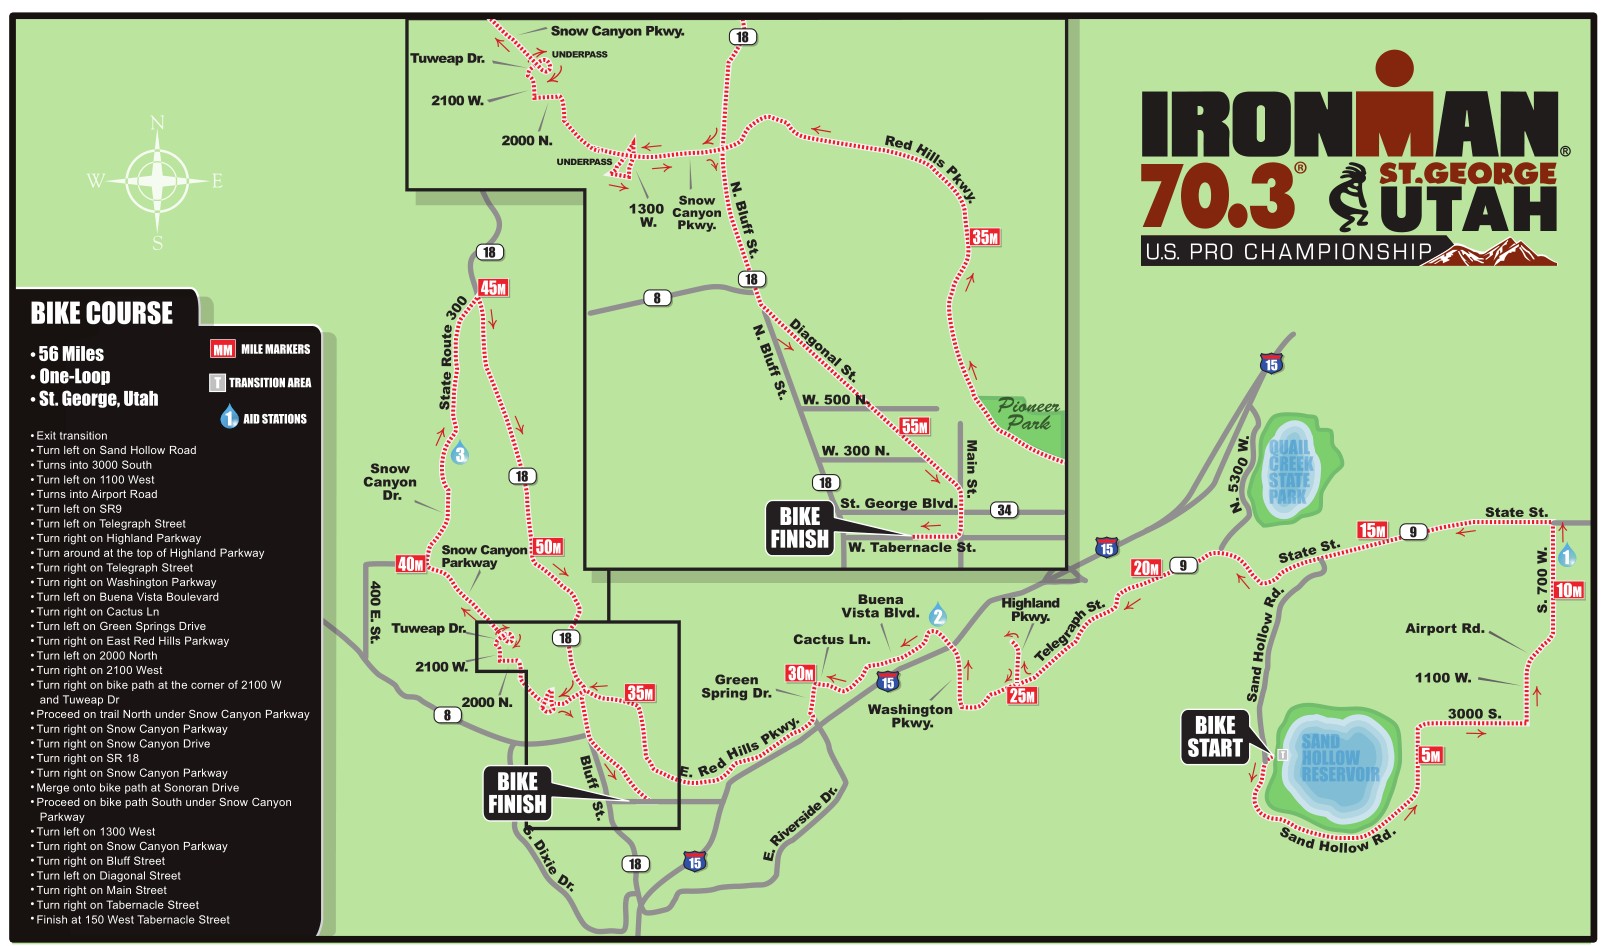 Ironman 70.3 St. road closures, detours, course maps St